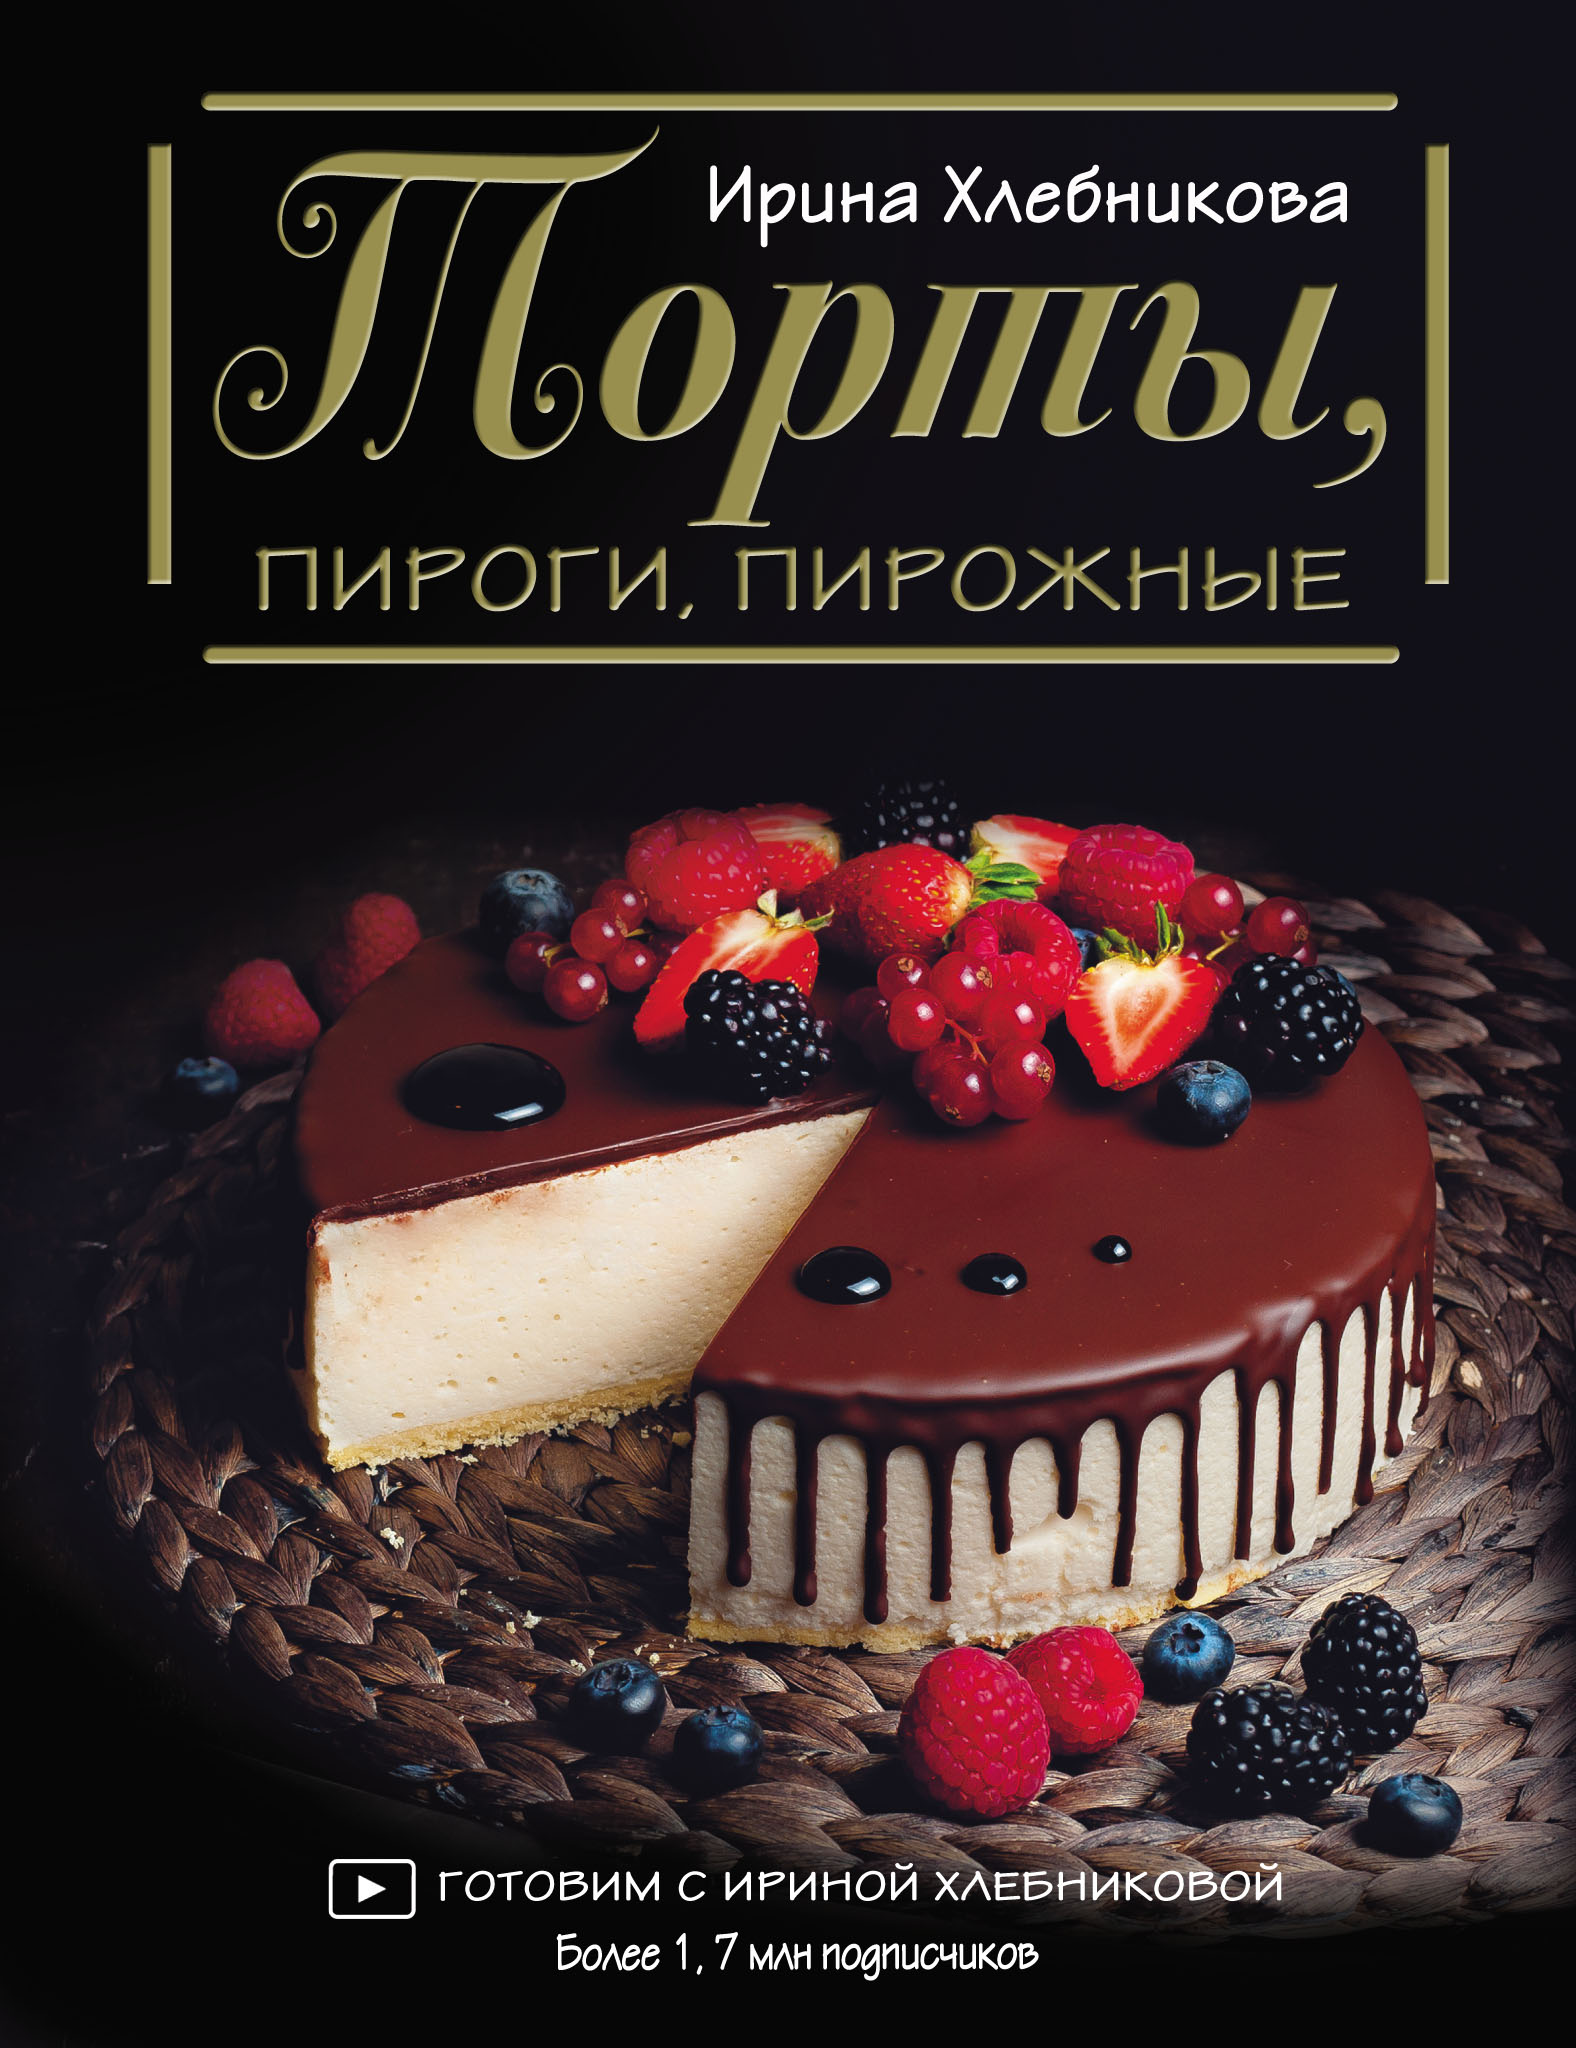 Домашний торт «Чебурашка» от Ирины Хлебниковой: просто и очень вкусно (видеорецепт)